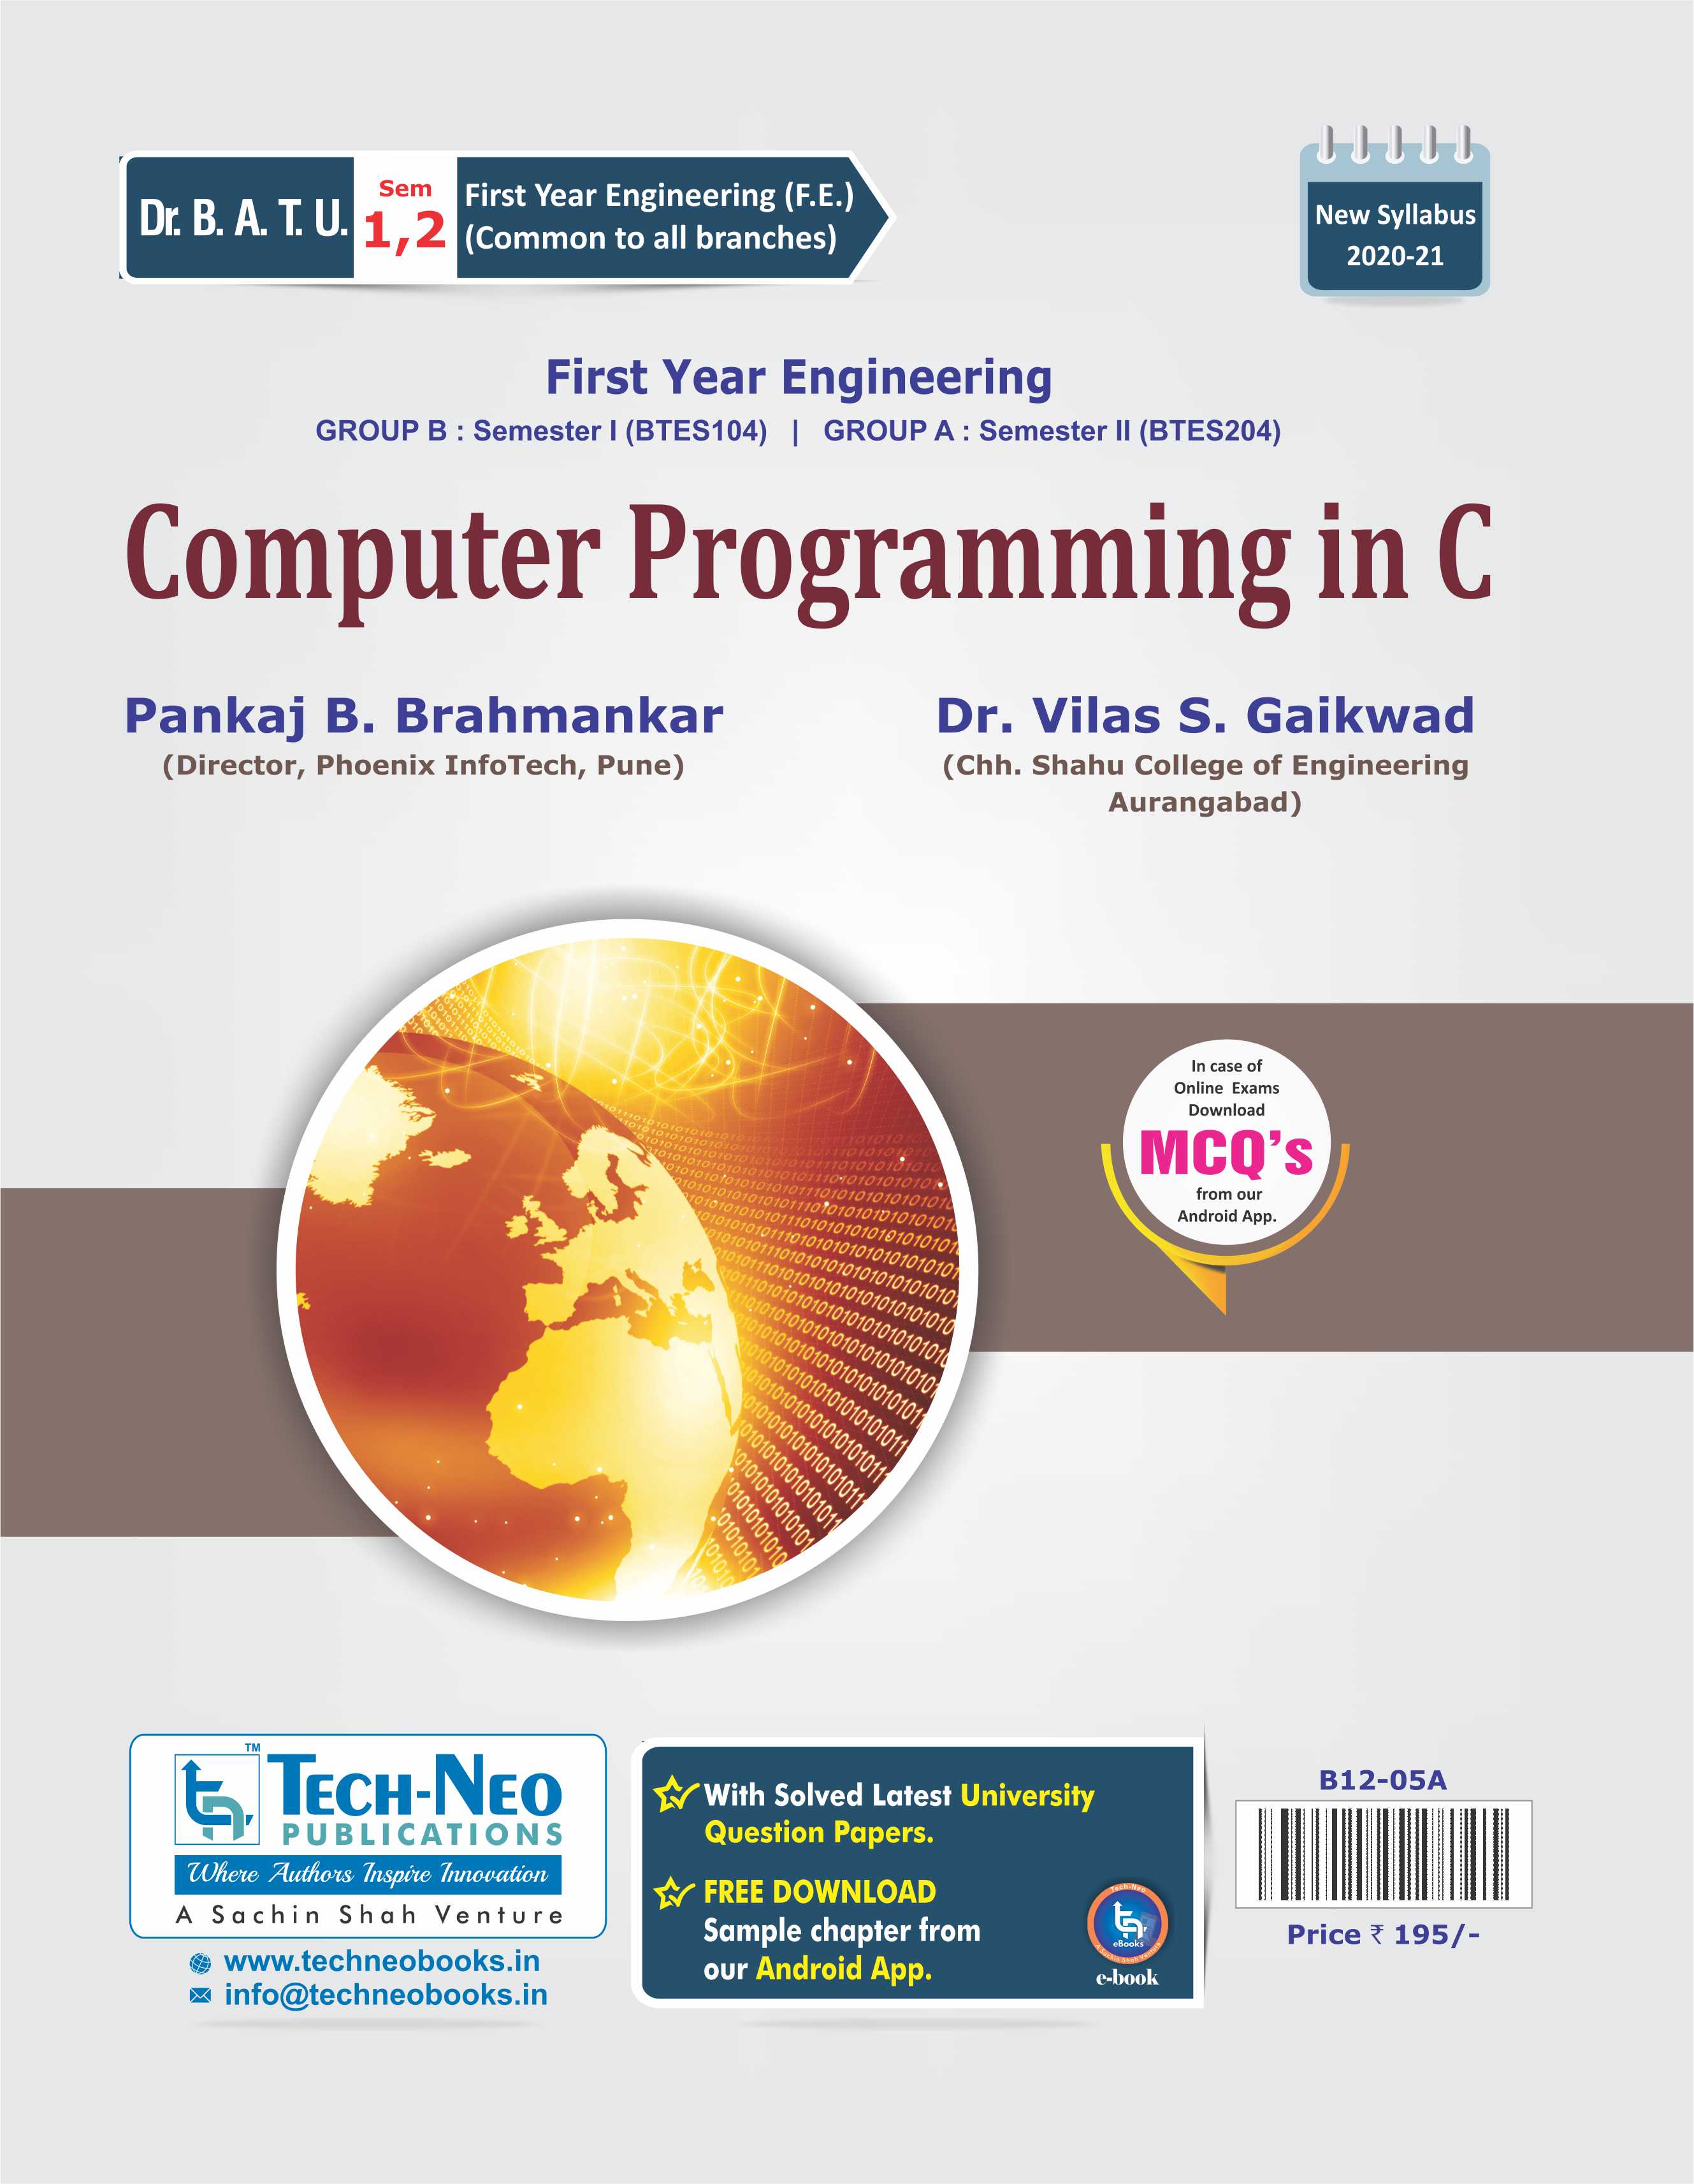 Computer Programming in C